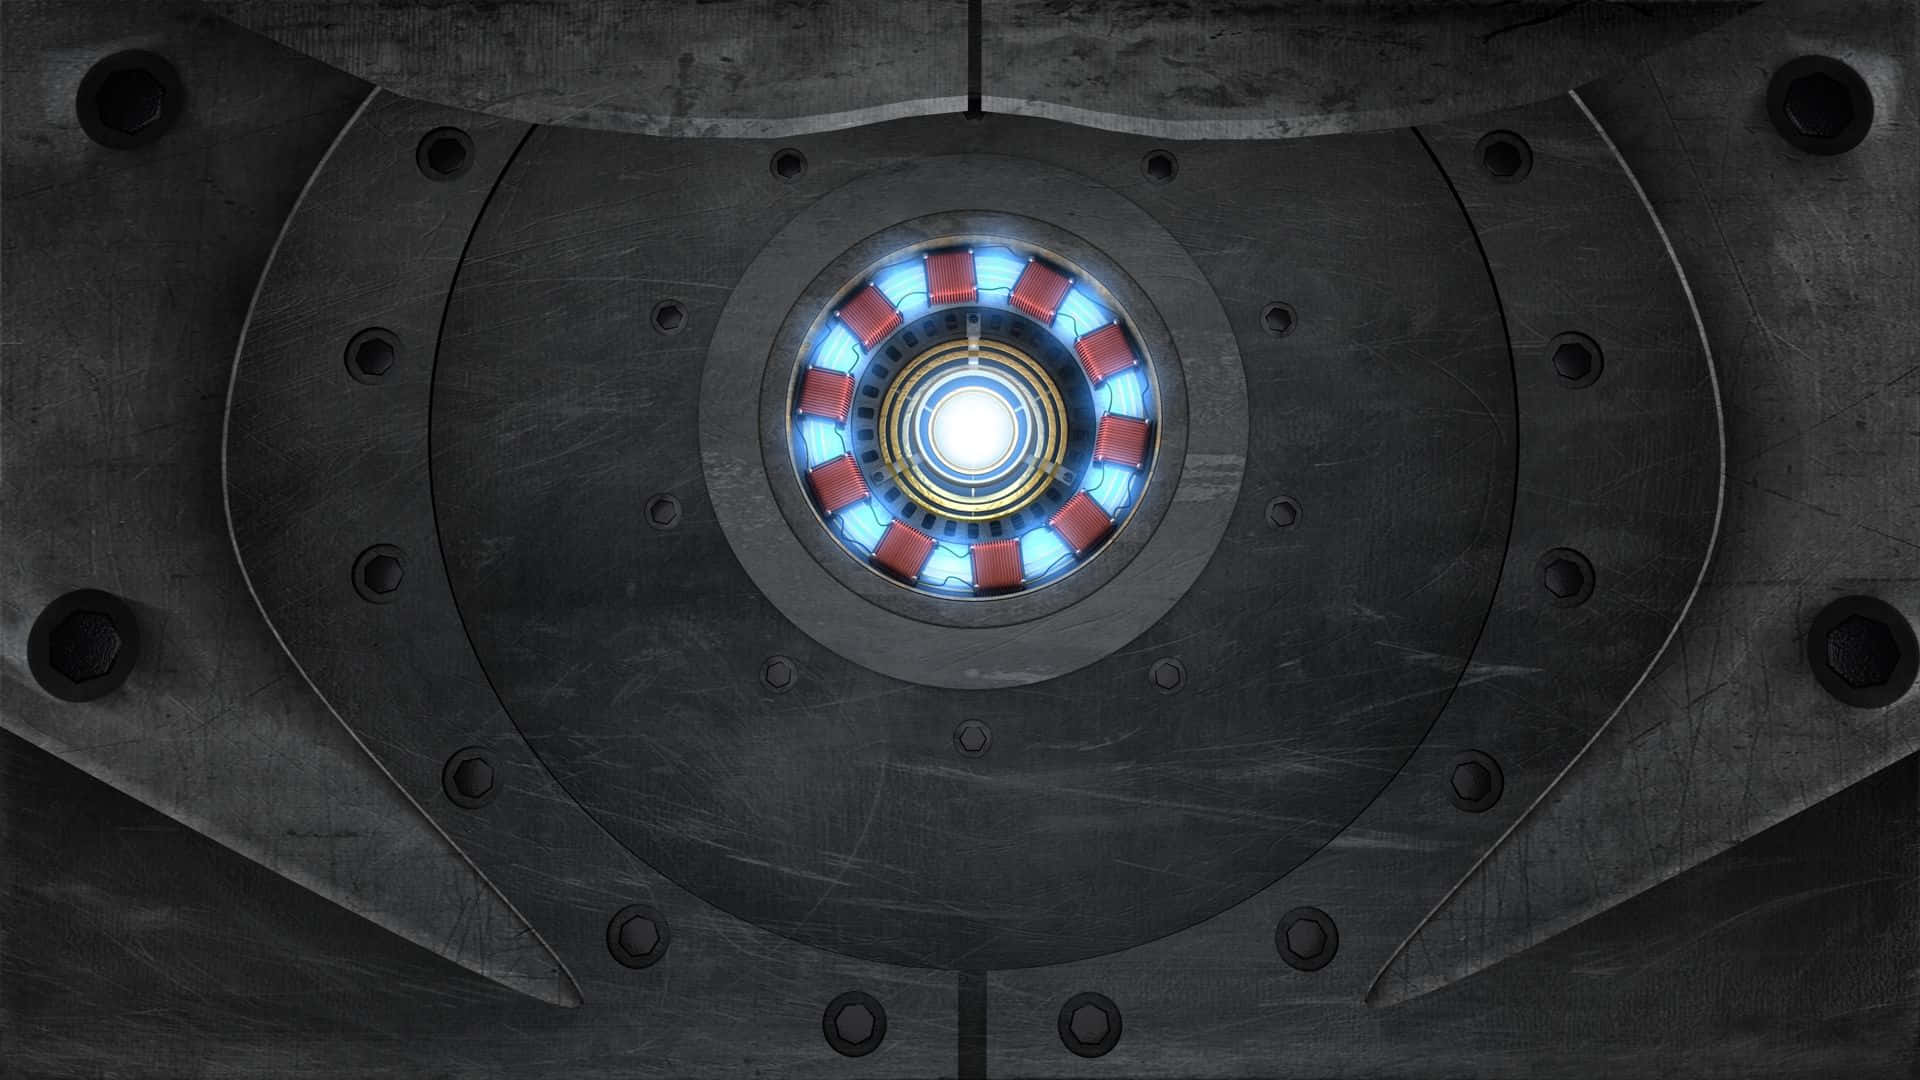 Elbrillante Reactor Arc Del Traje De Iron Man. Fondo de pantalla